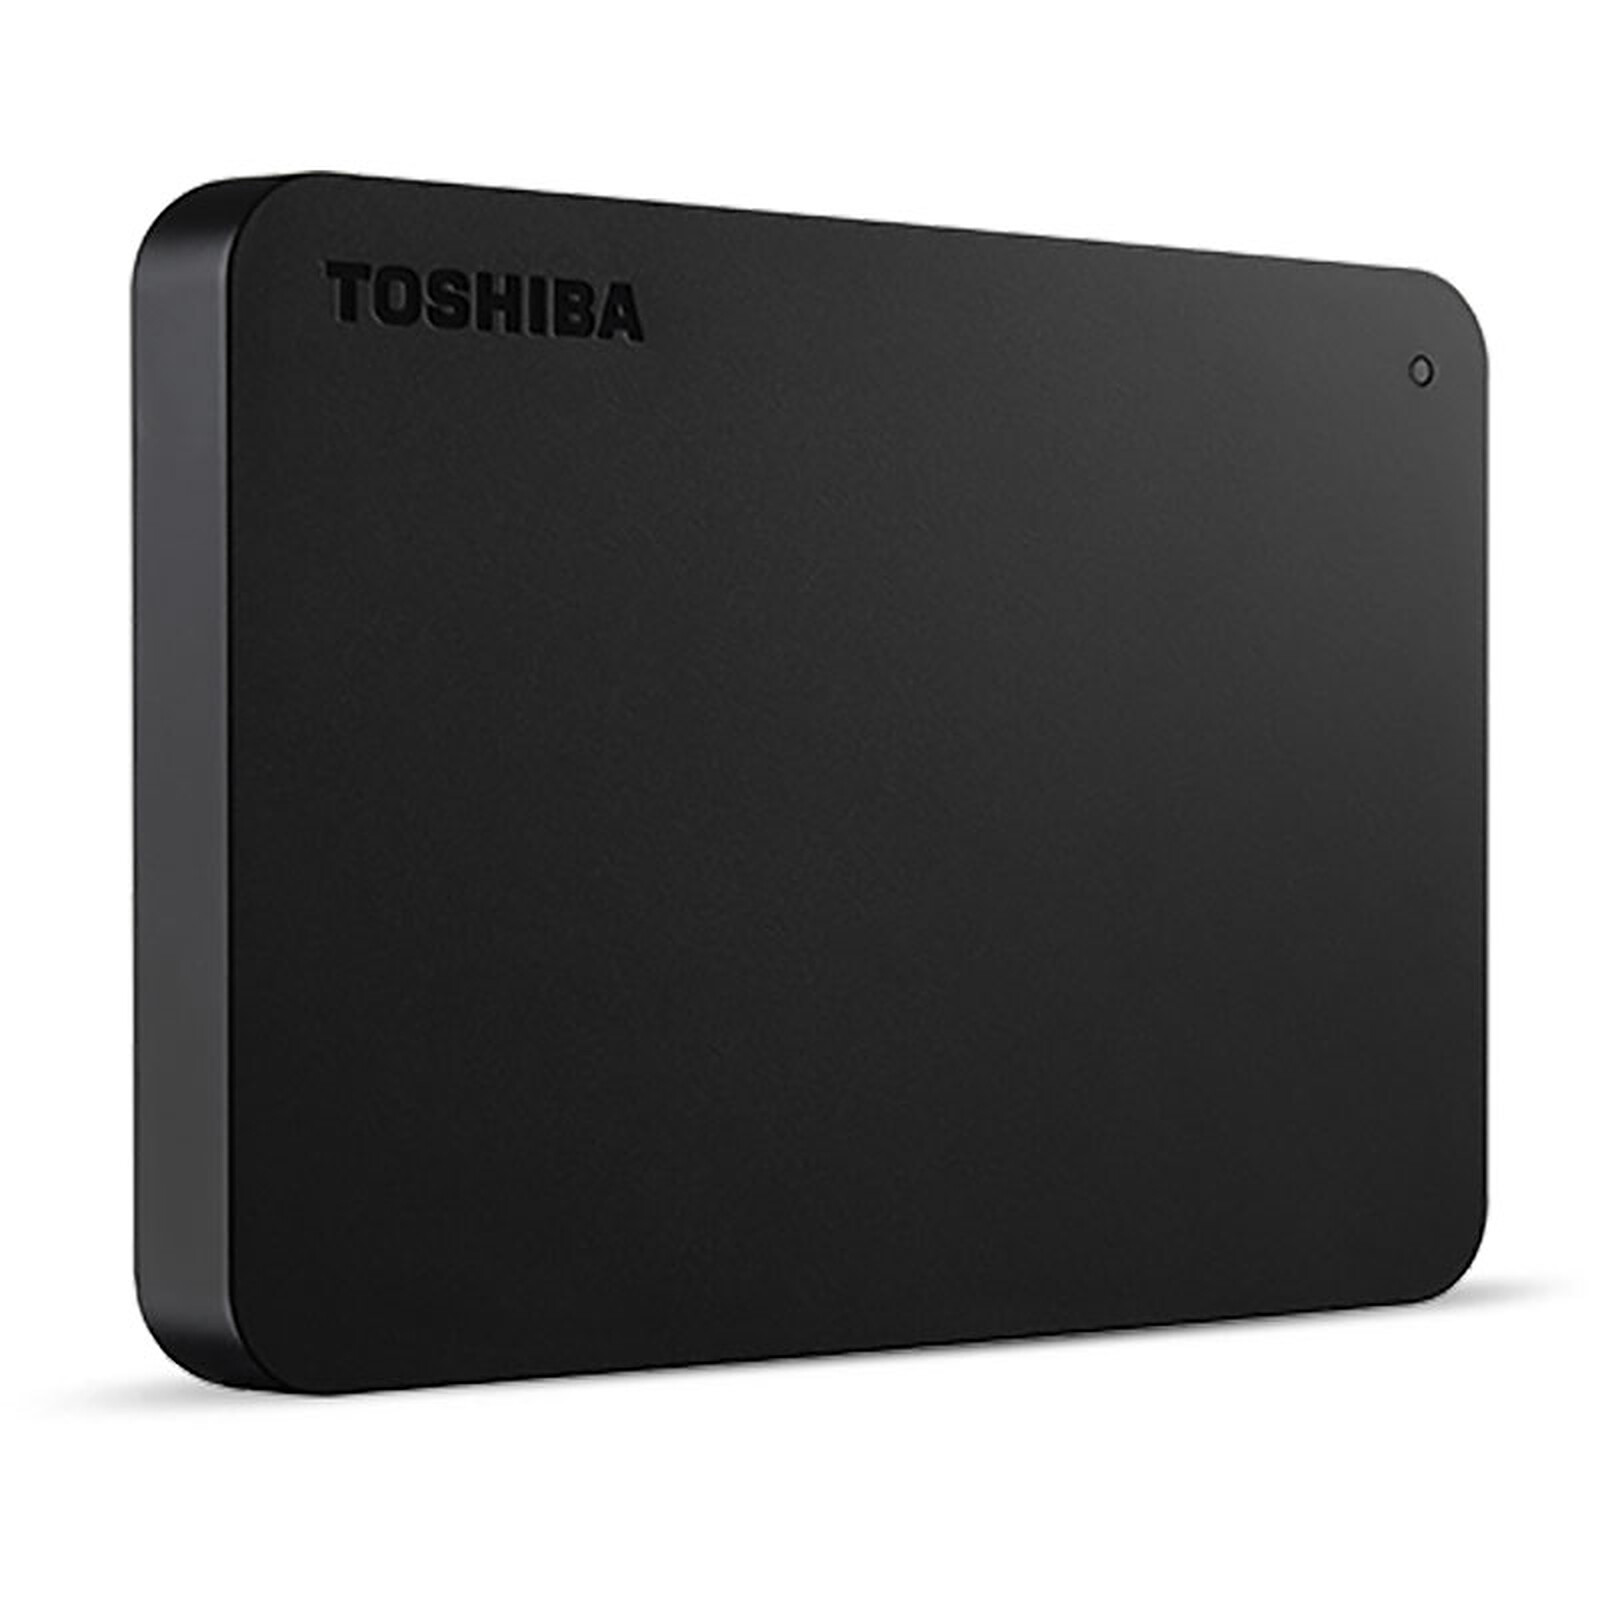 Toshiba Canvio Gaming 1 To Noir - Disque dur externe - Garantie 3 ans LDLC